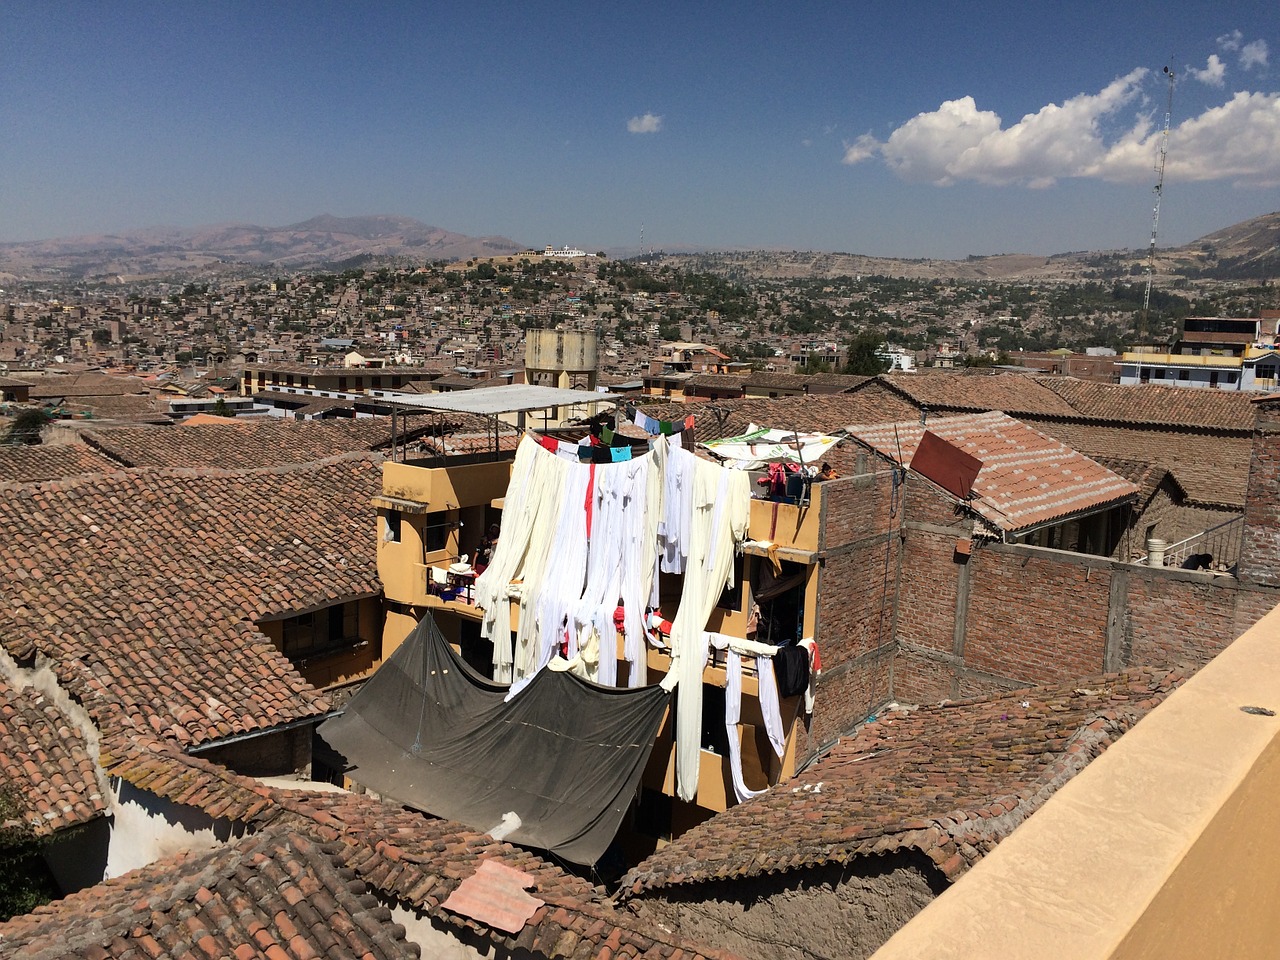 ayacucho roof laundry free photo